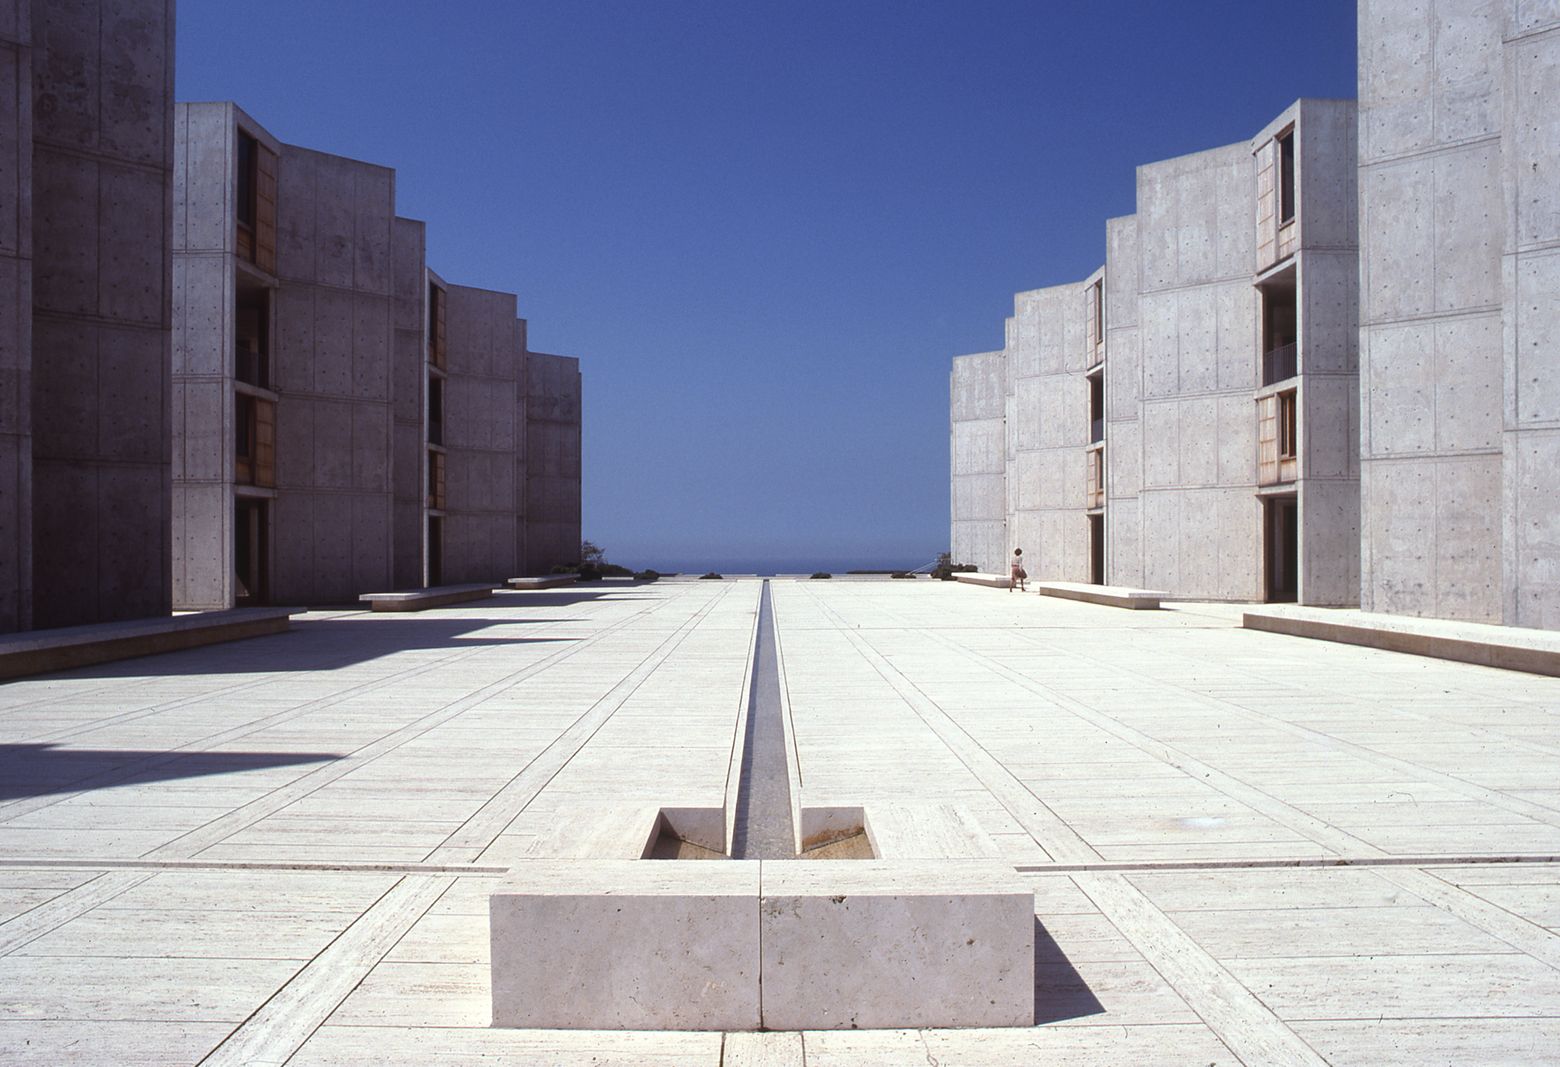 Salk Institute - Designing Buildings